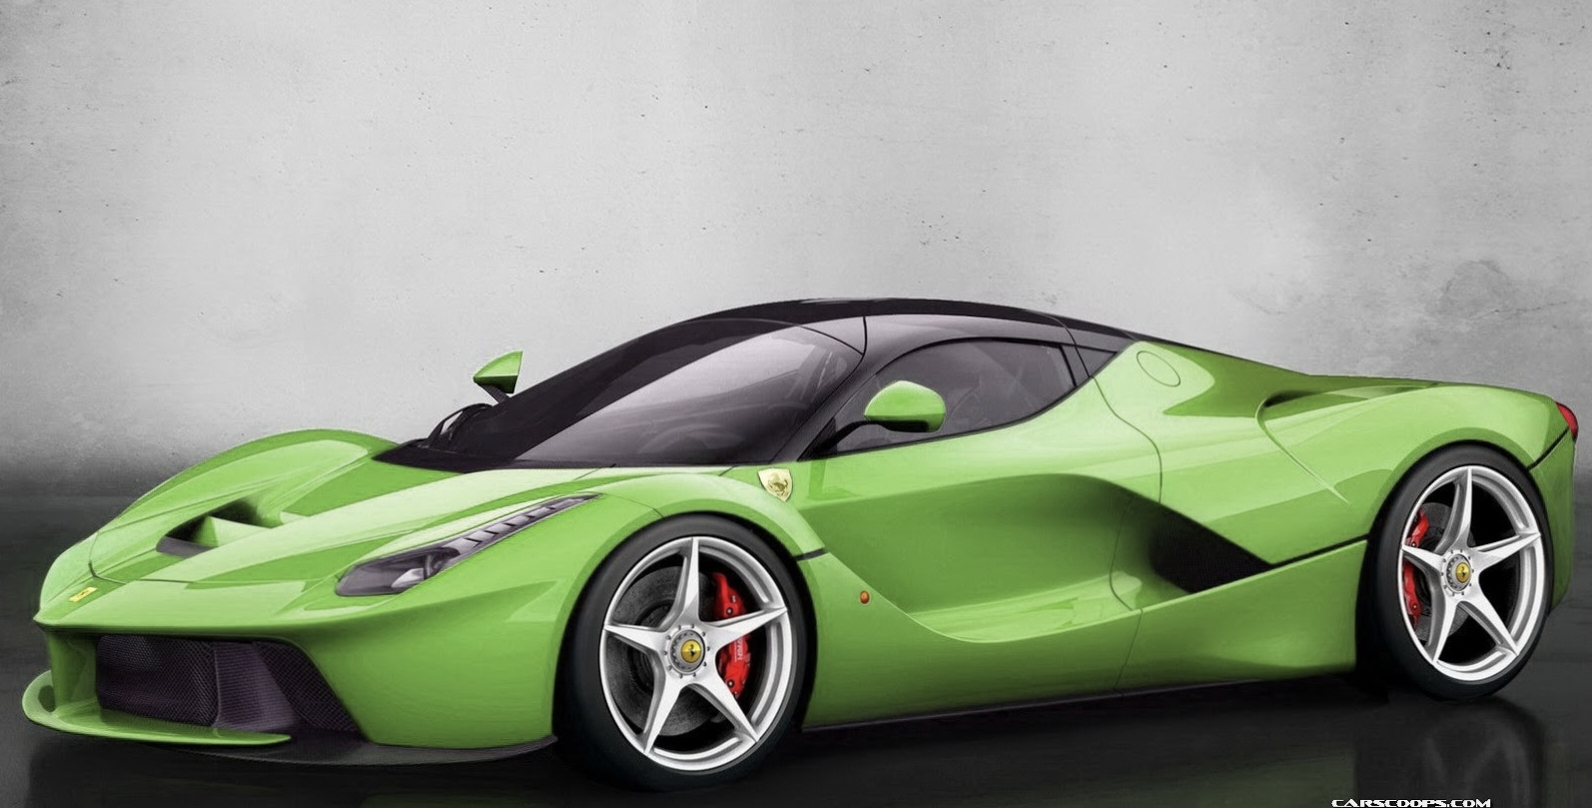 Ferrari, Mobil Sport Kelas Atas Tanpa Tanding di Lengkapi dengan  Fitur Teknologi Canggih